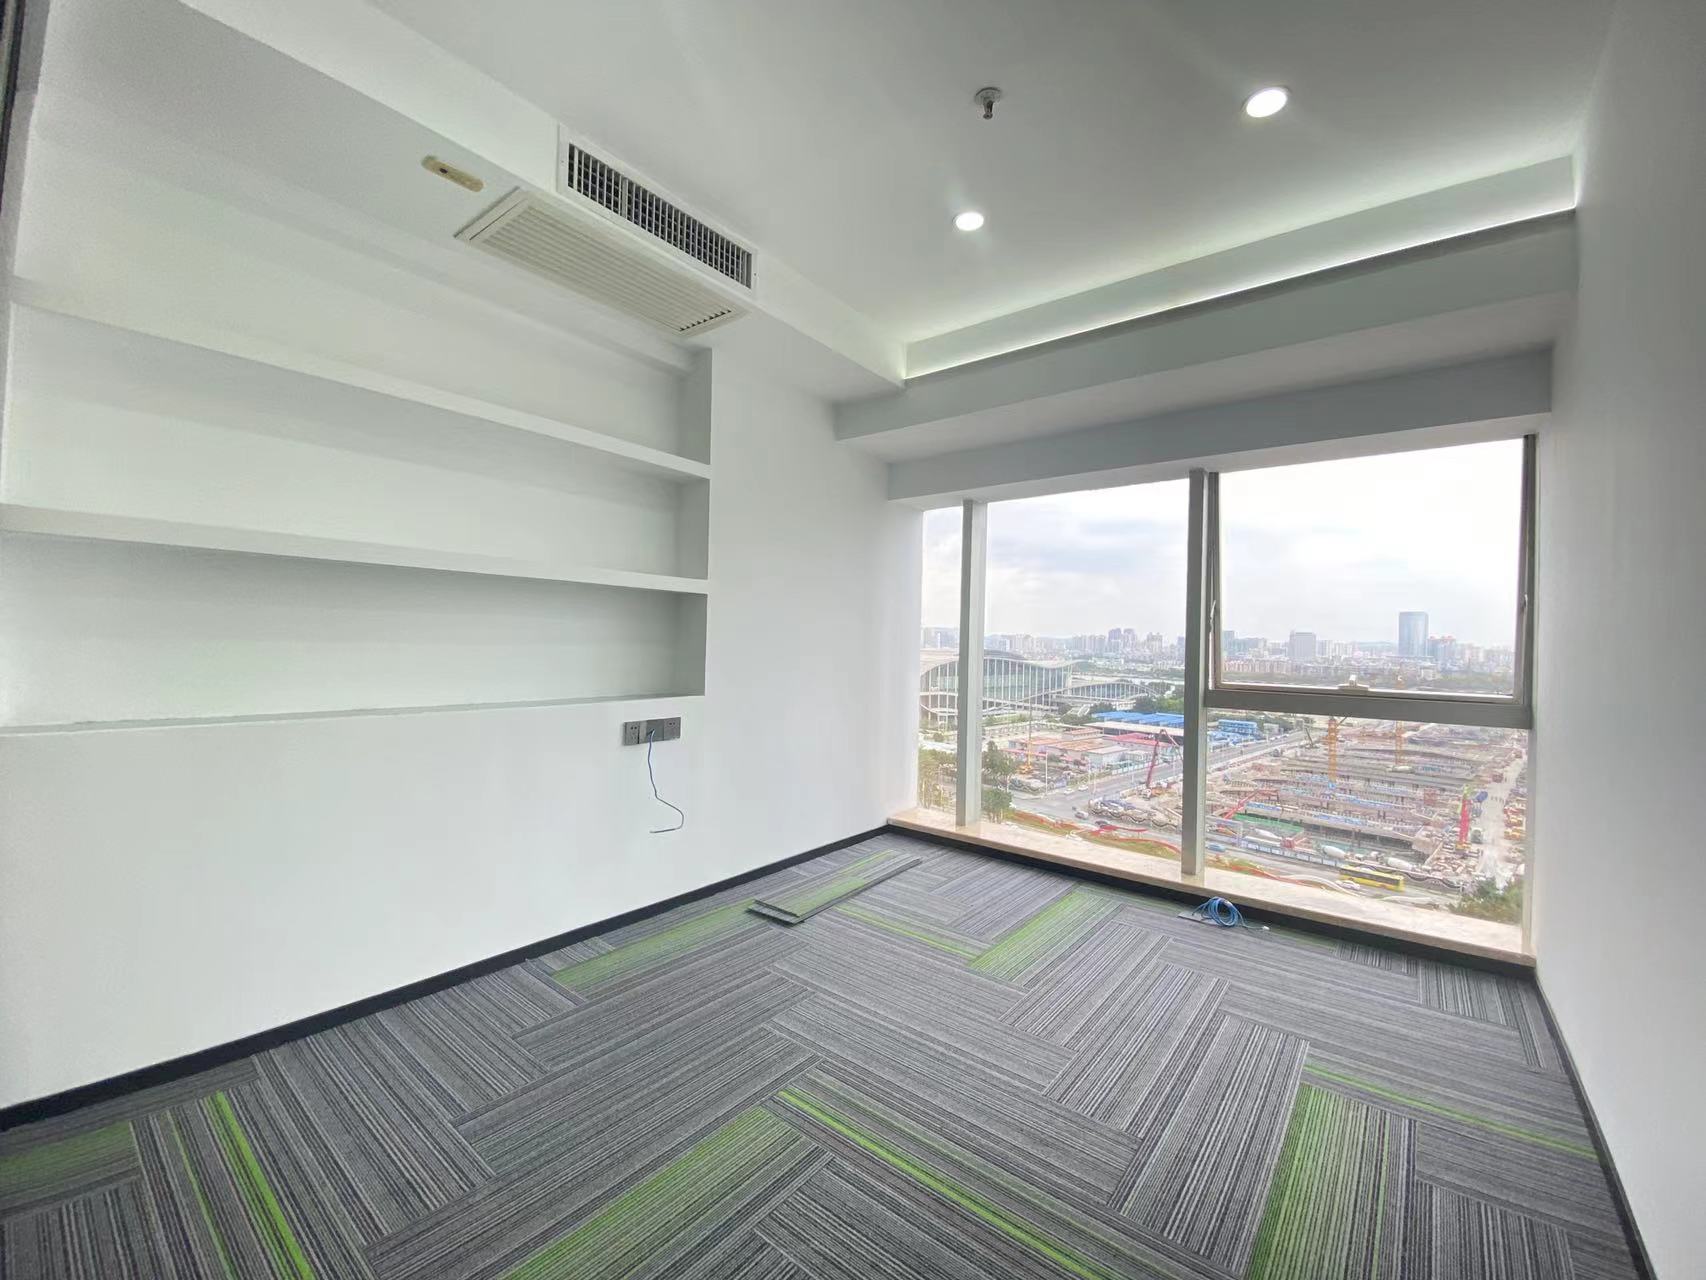 广州市增城区中新精装修办公室80平方出租